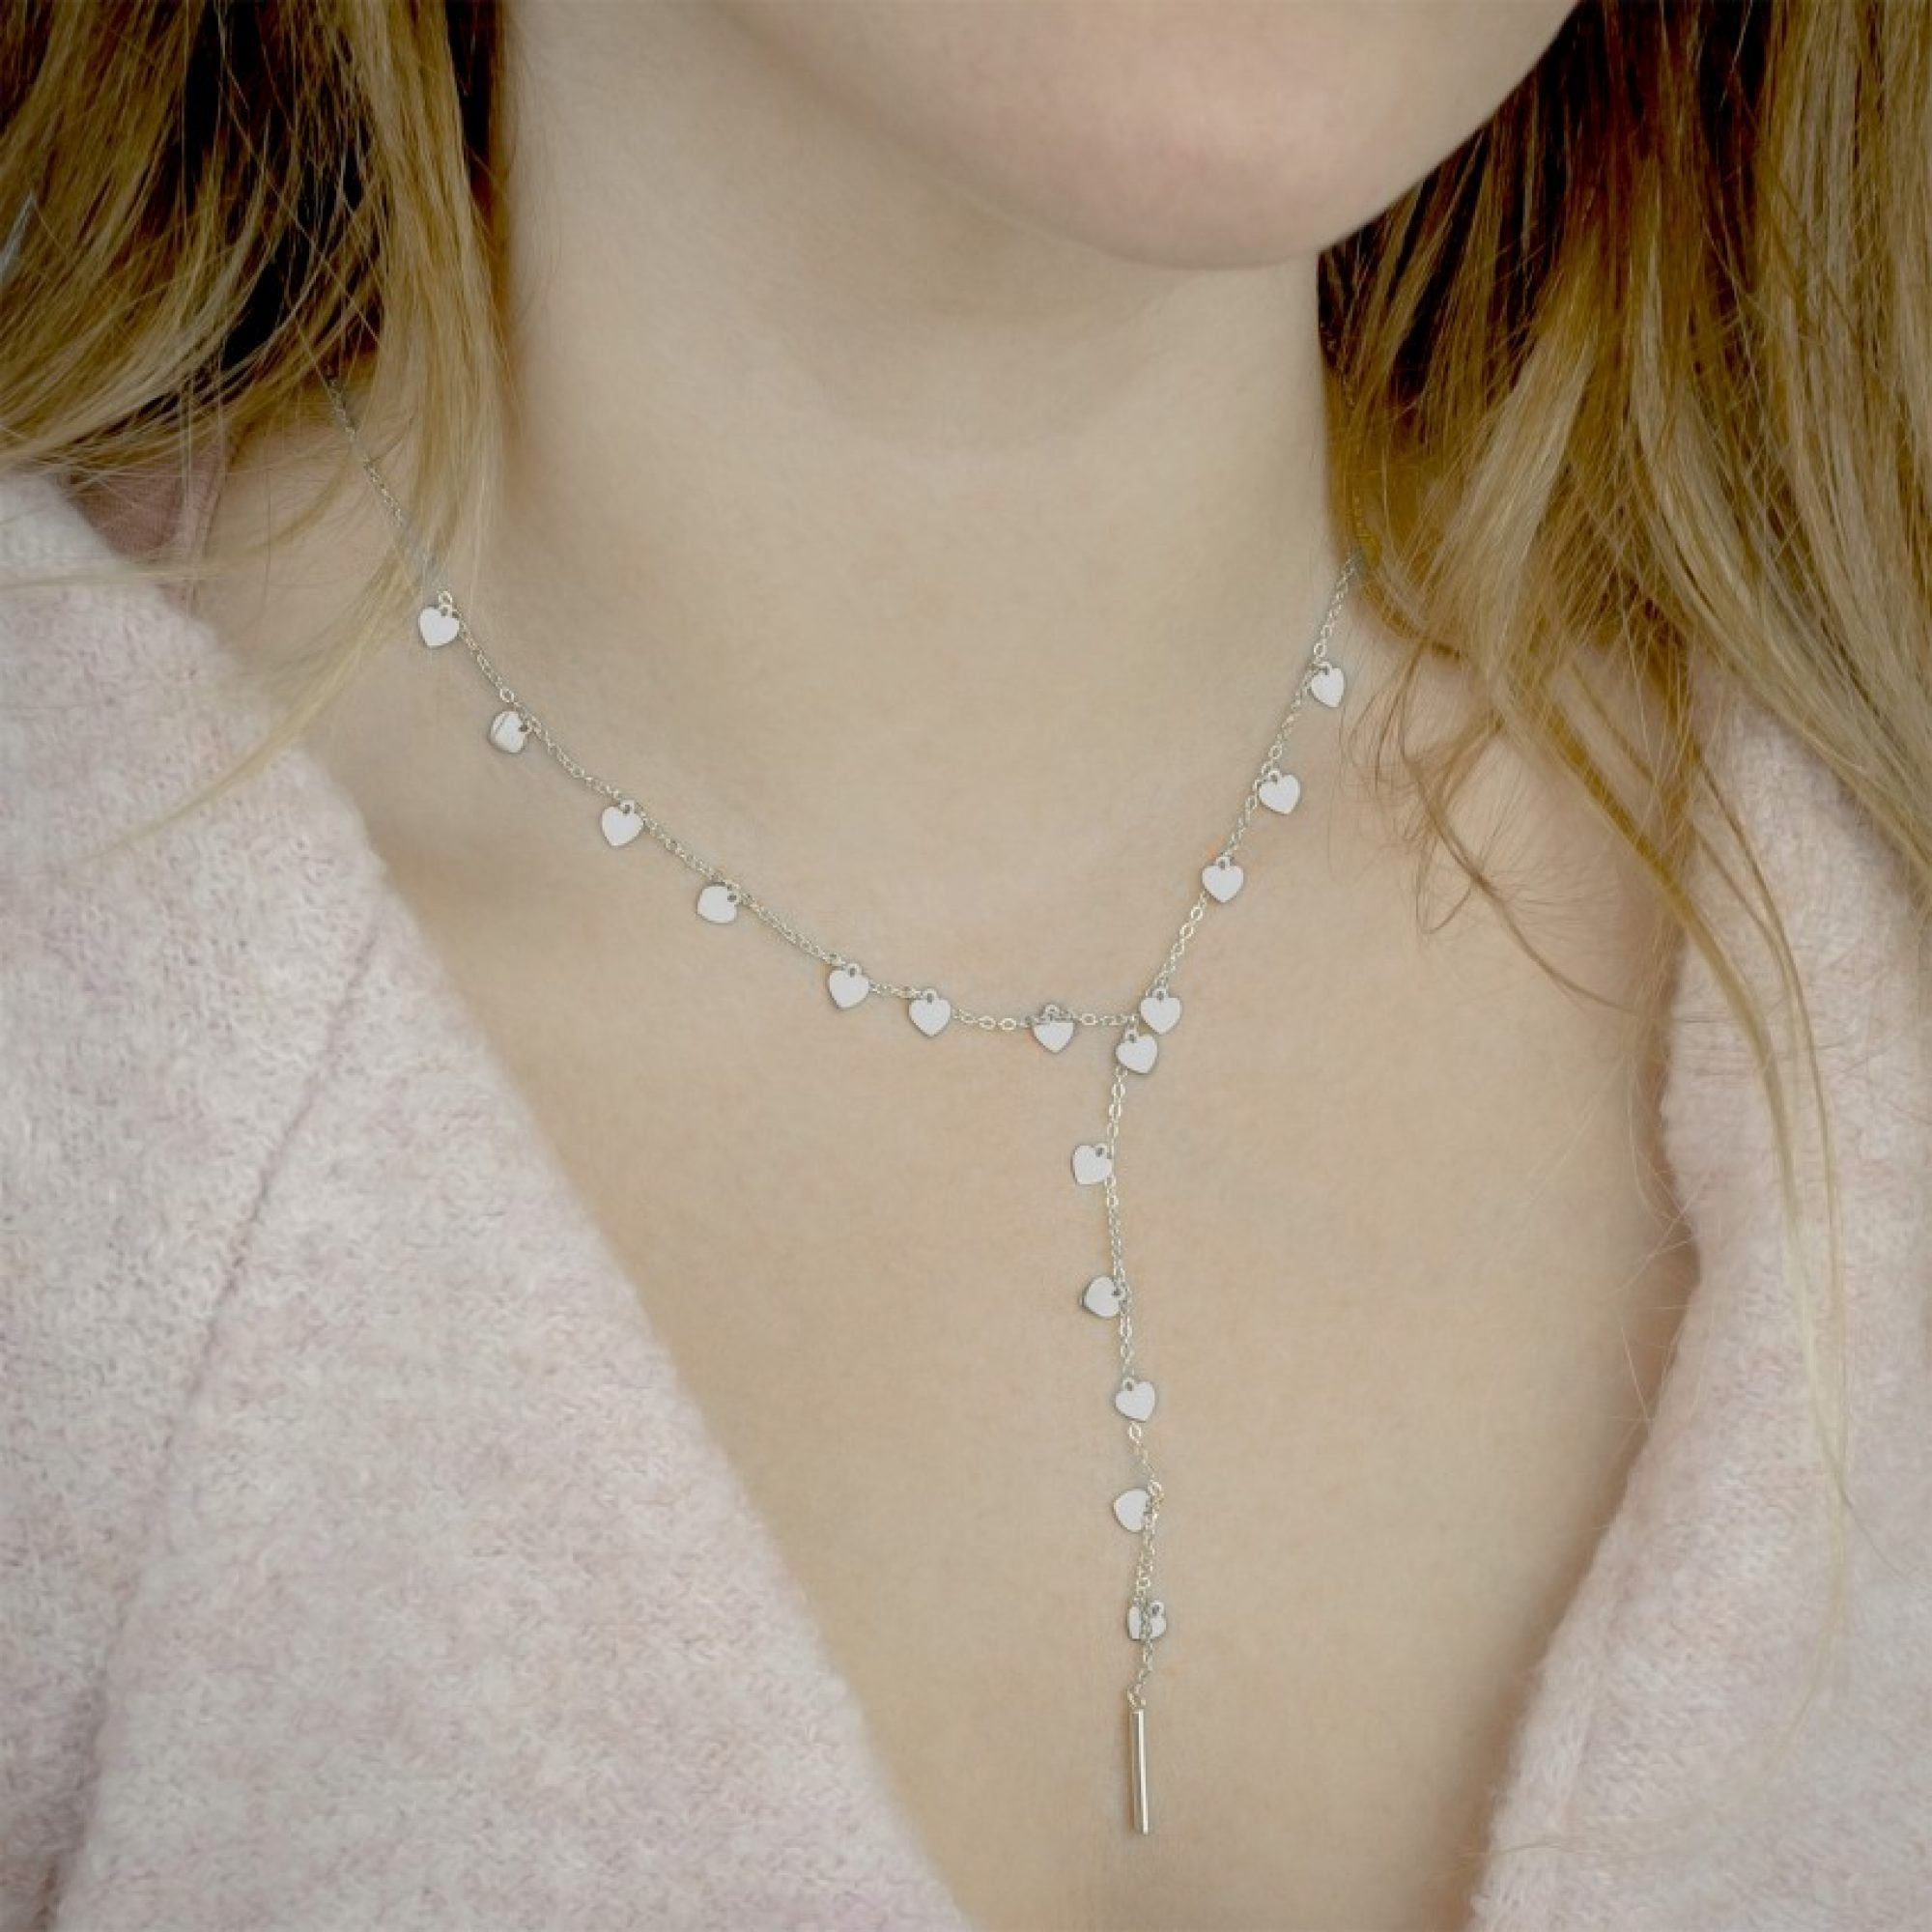 Y-style silver necklace